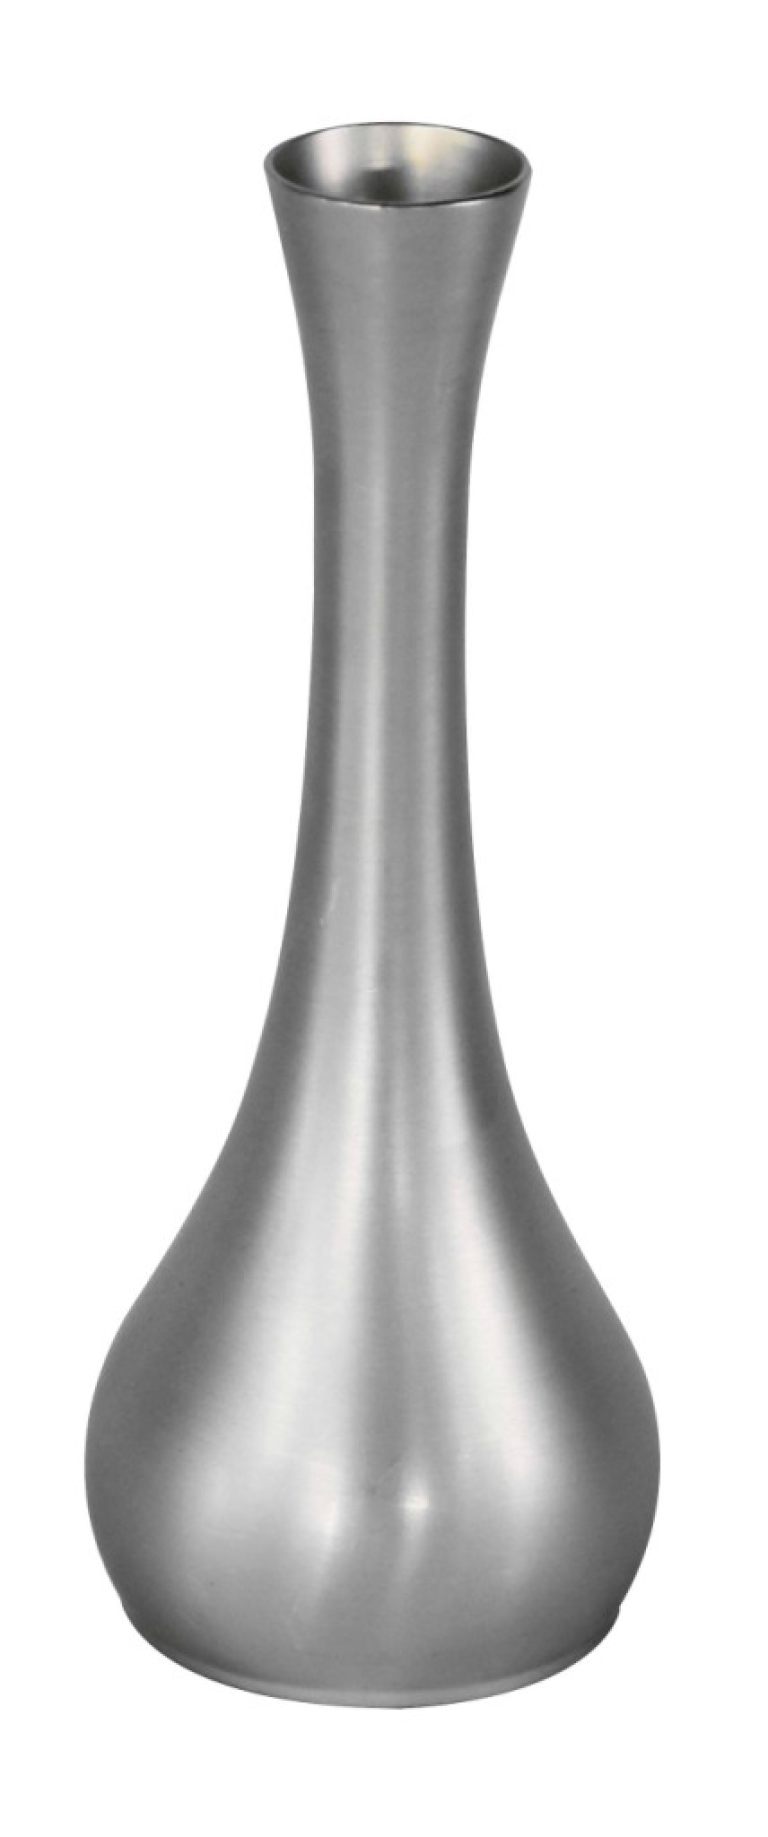 Vase Metal Stainless Steel